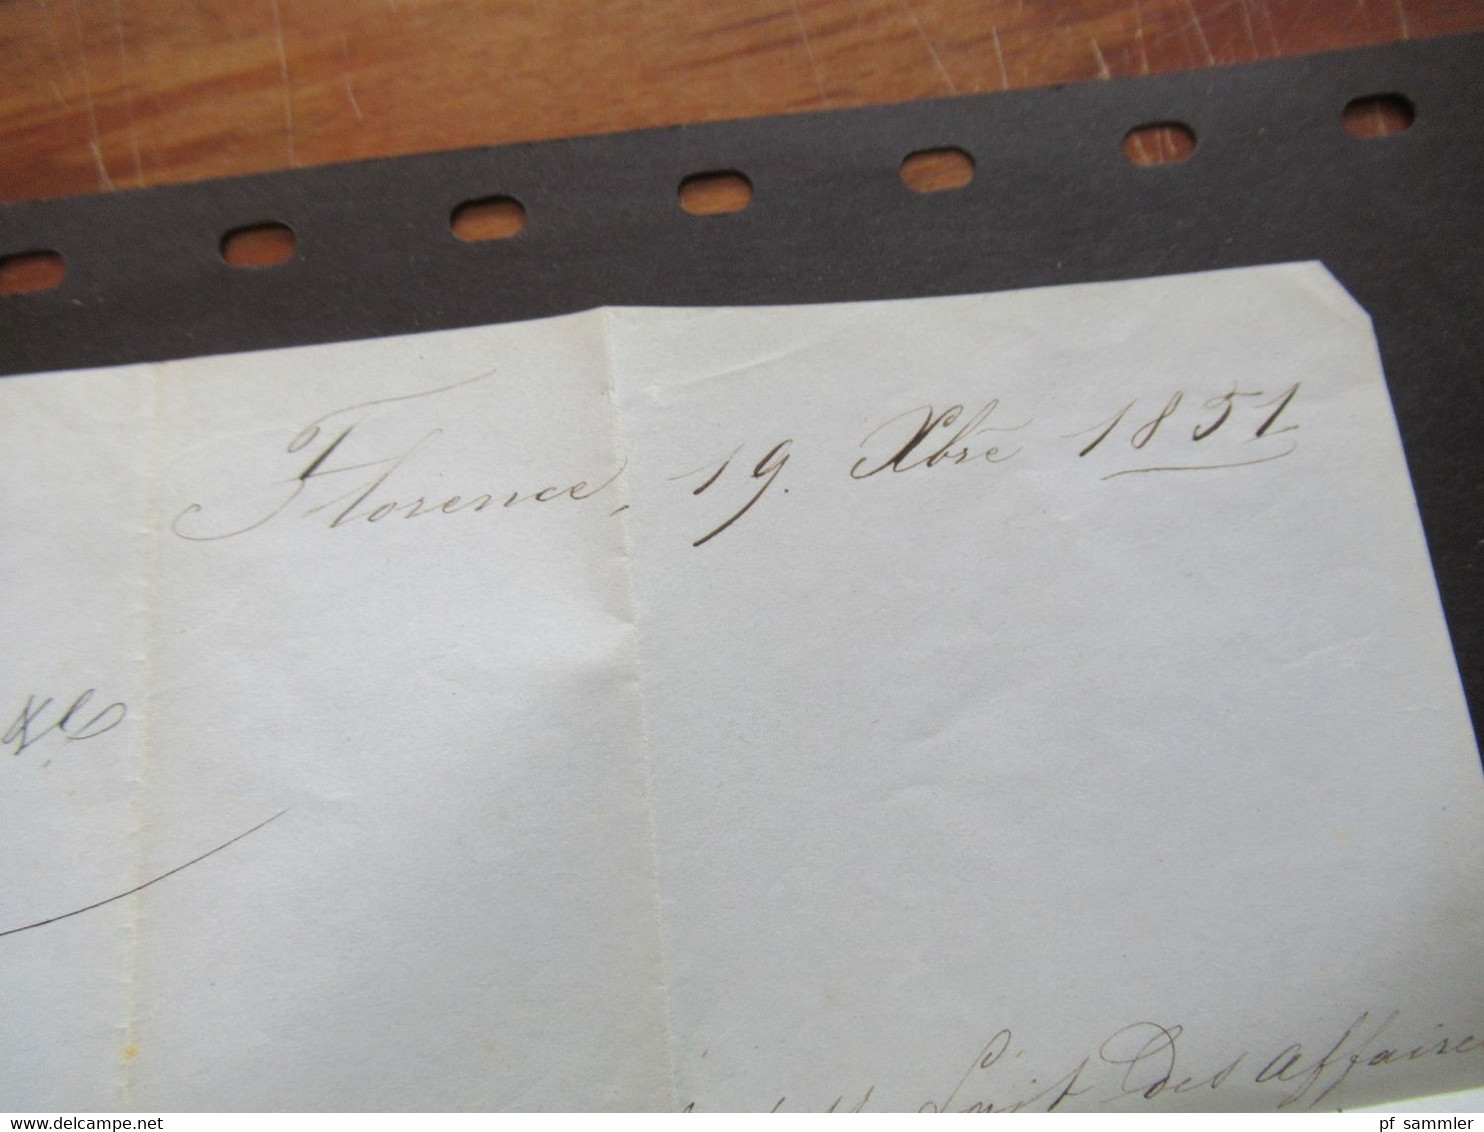 Italien Toskana 19.10.1851 Firenze / Florenz Brief nach Lion geprägtes briefpapier mit Krone Rath Faltbrief mit Inhalt